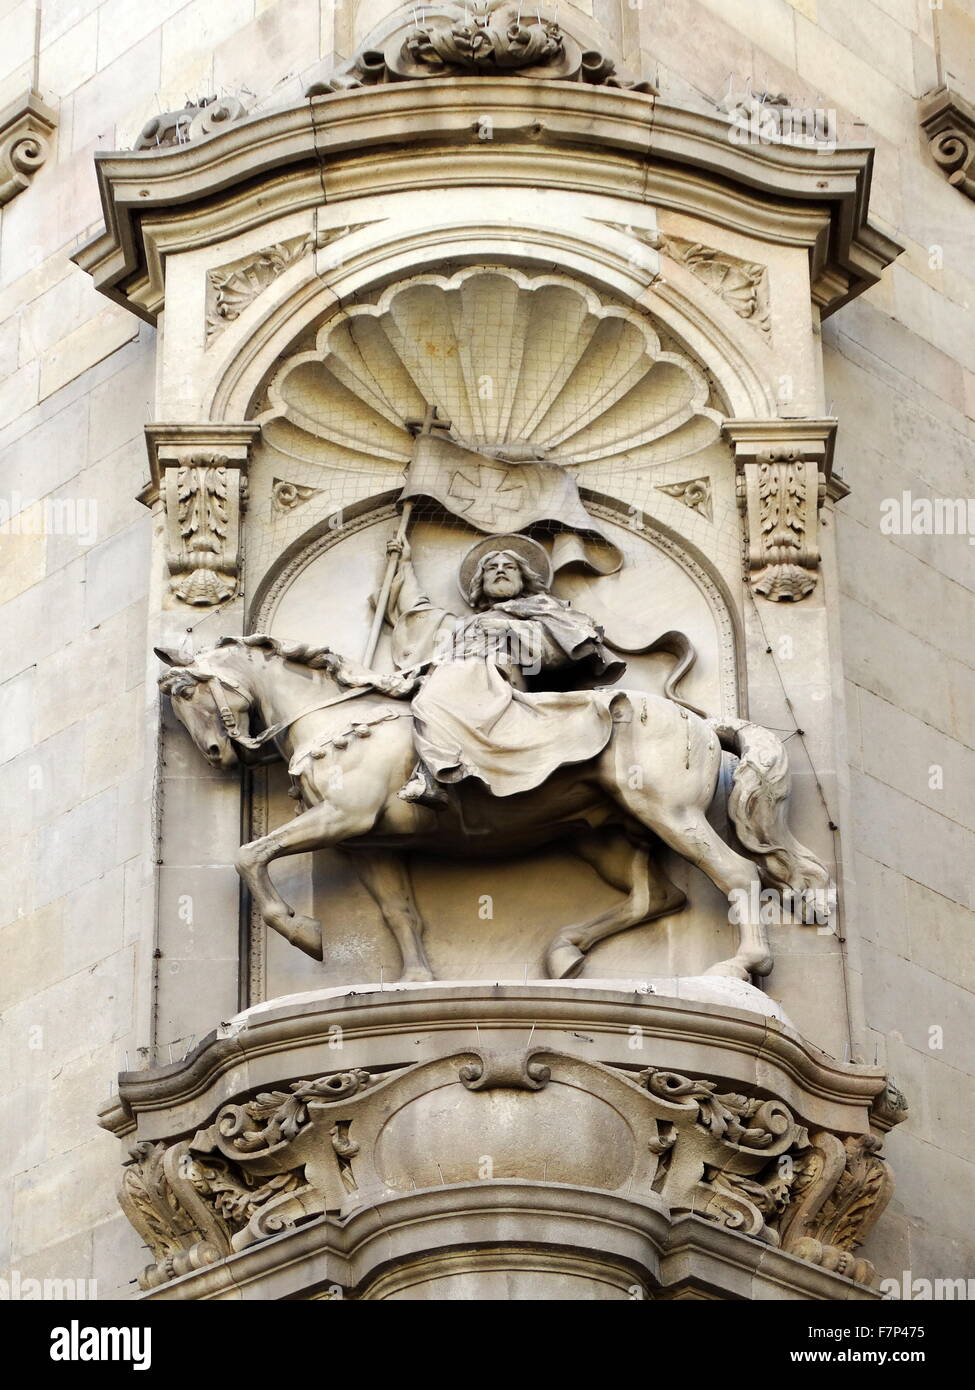 Le Christ Sauveur orne une dans le quartier gothique de Barcelone, Espagne Banque D'Images